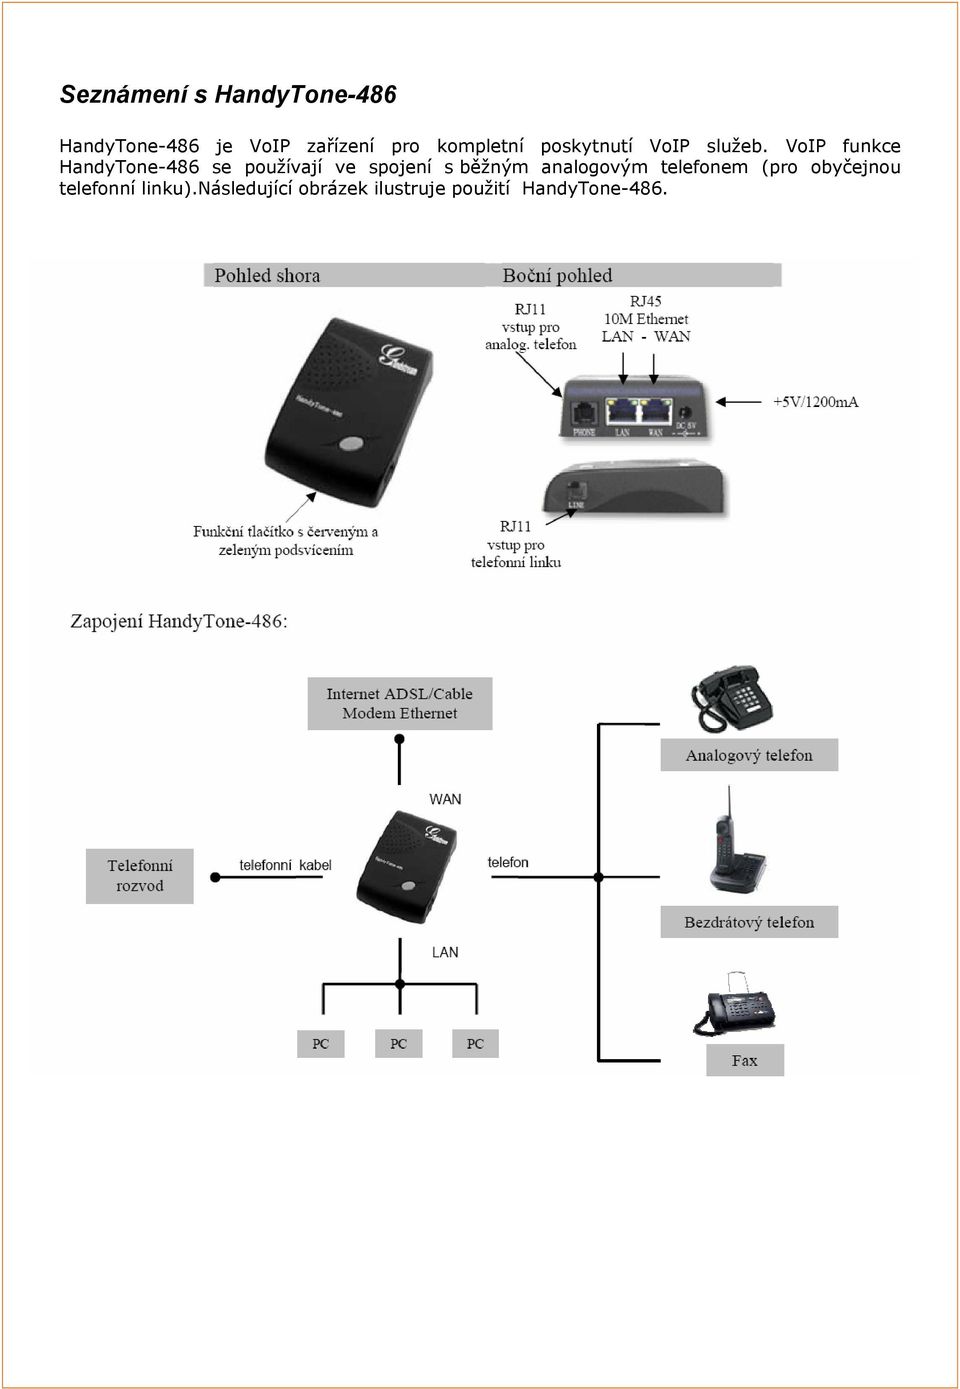 VoIP funkce HandyTone-486 se používají ve spojení s běžným